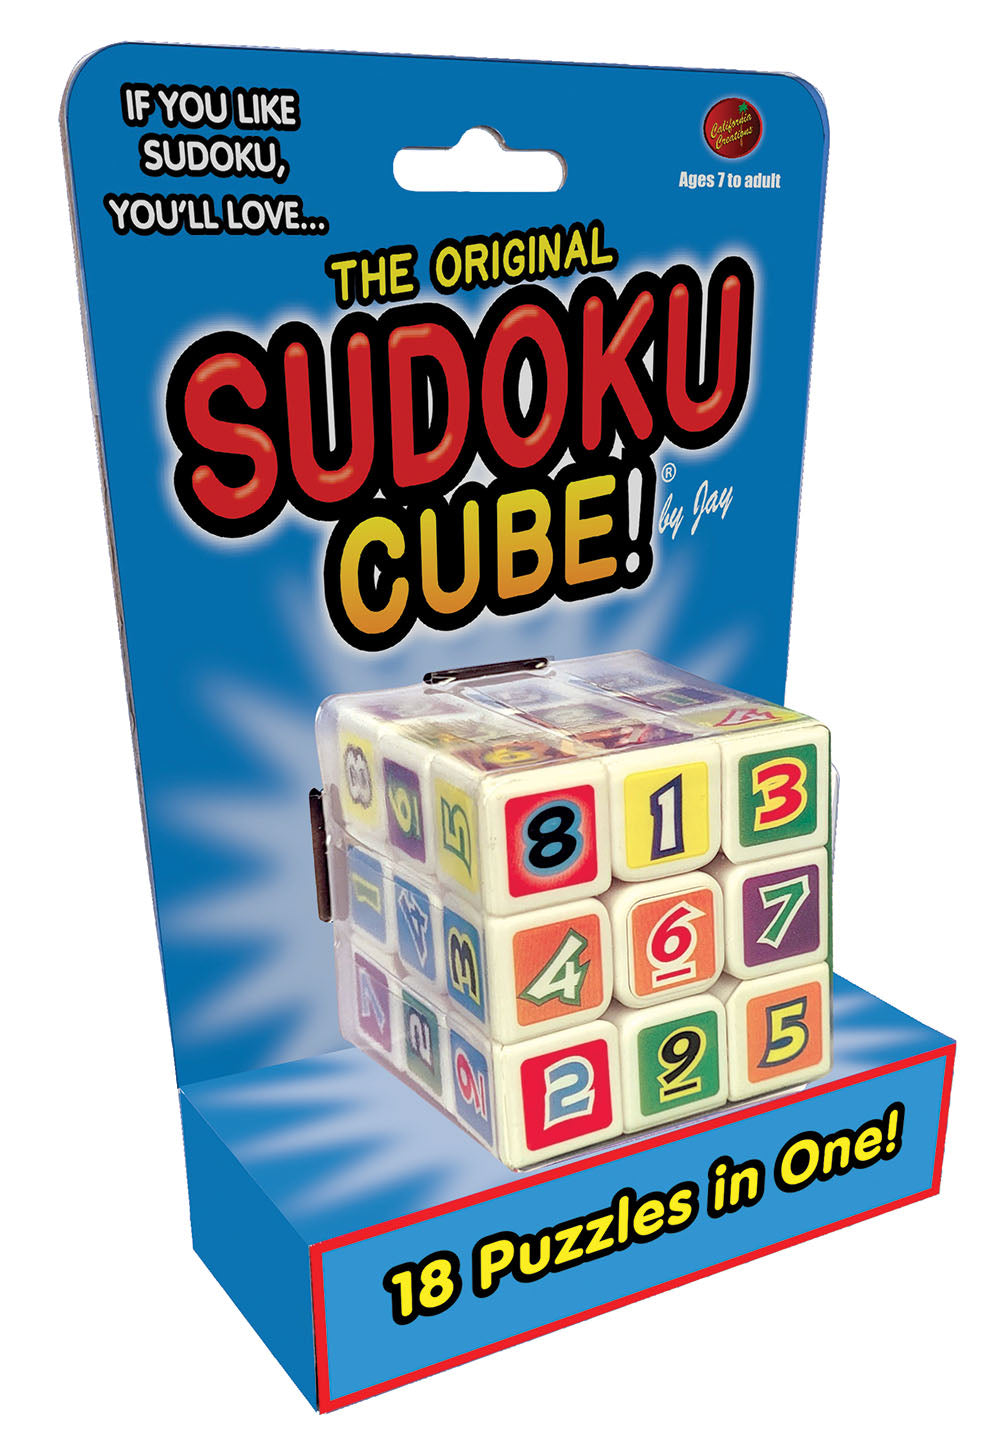 Sudoku Cube! by Jay